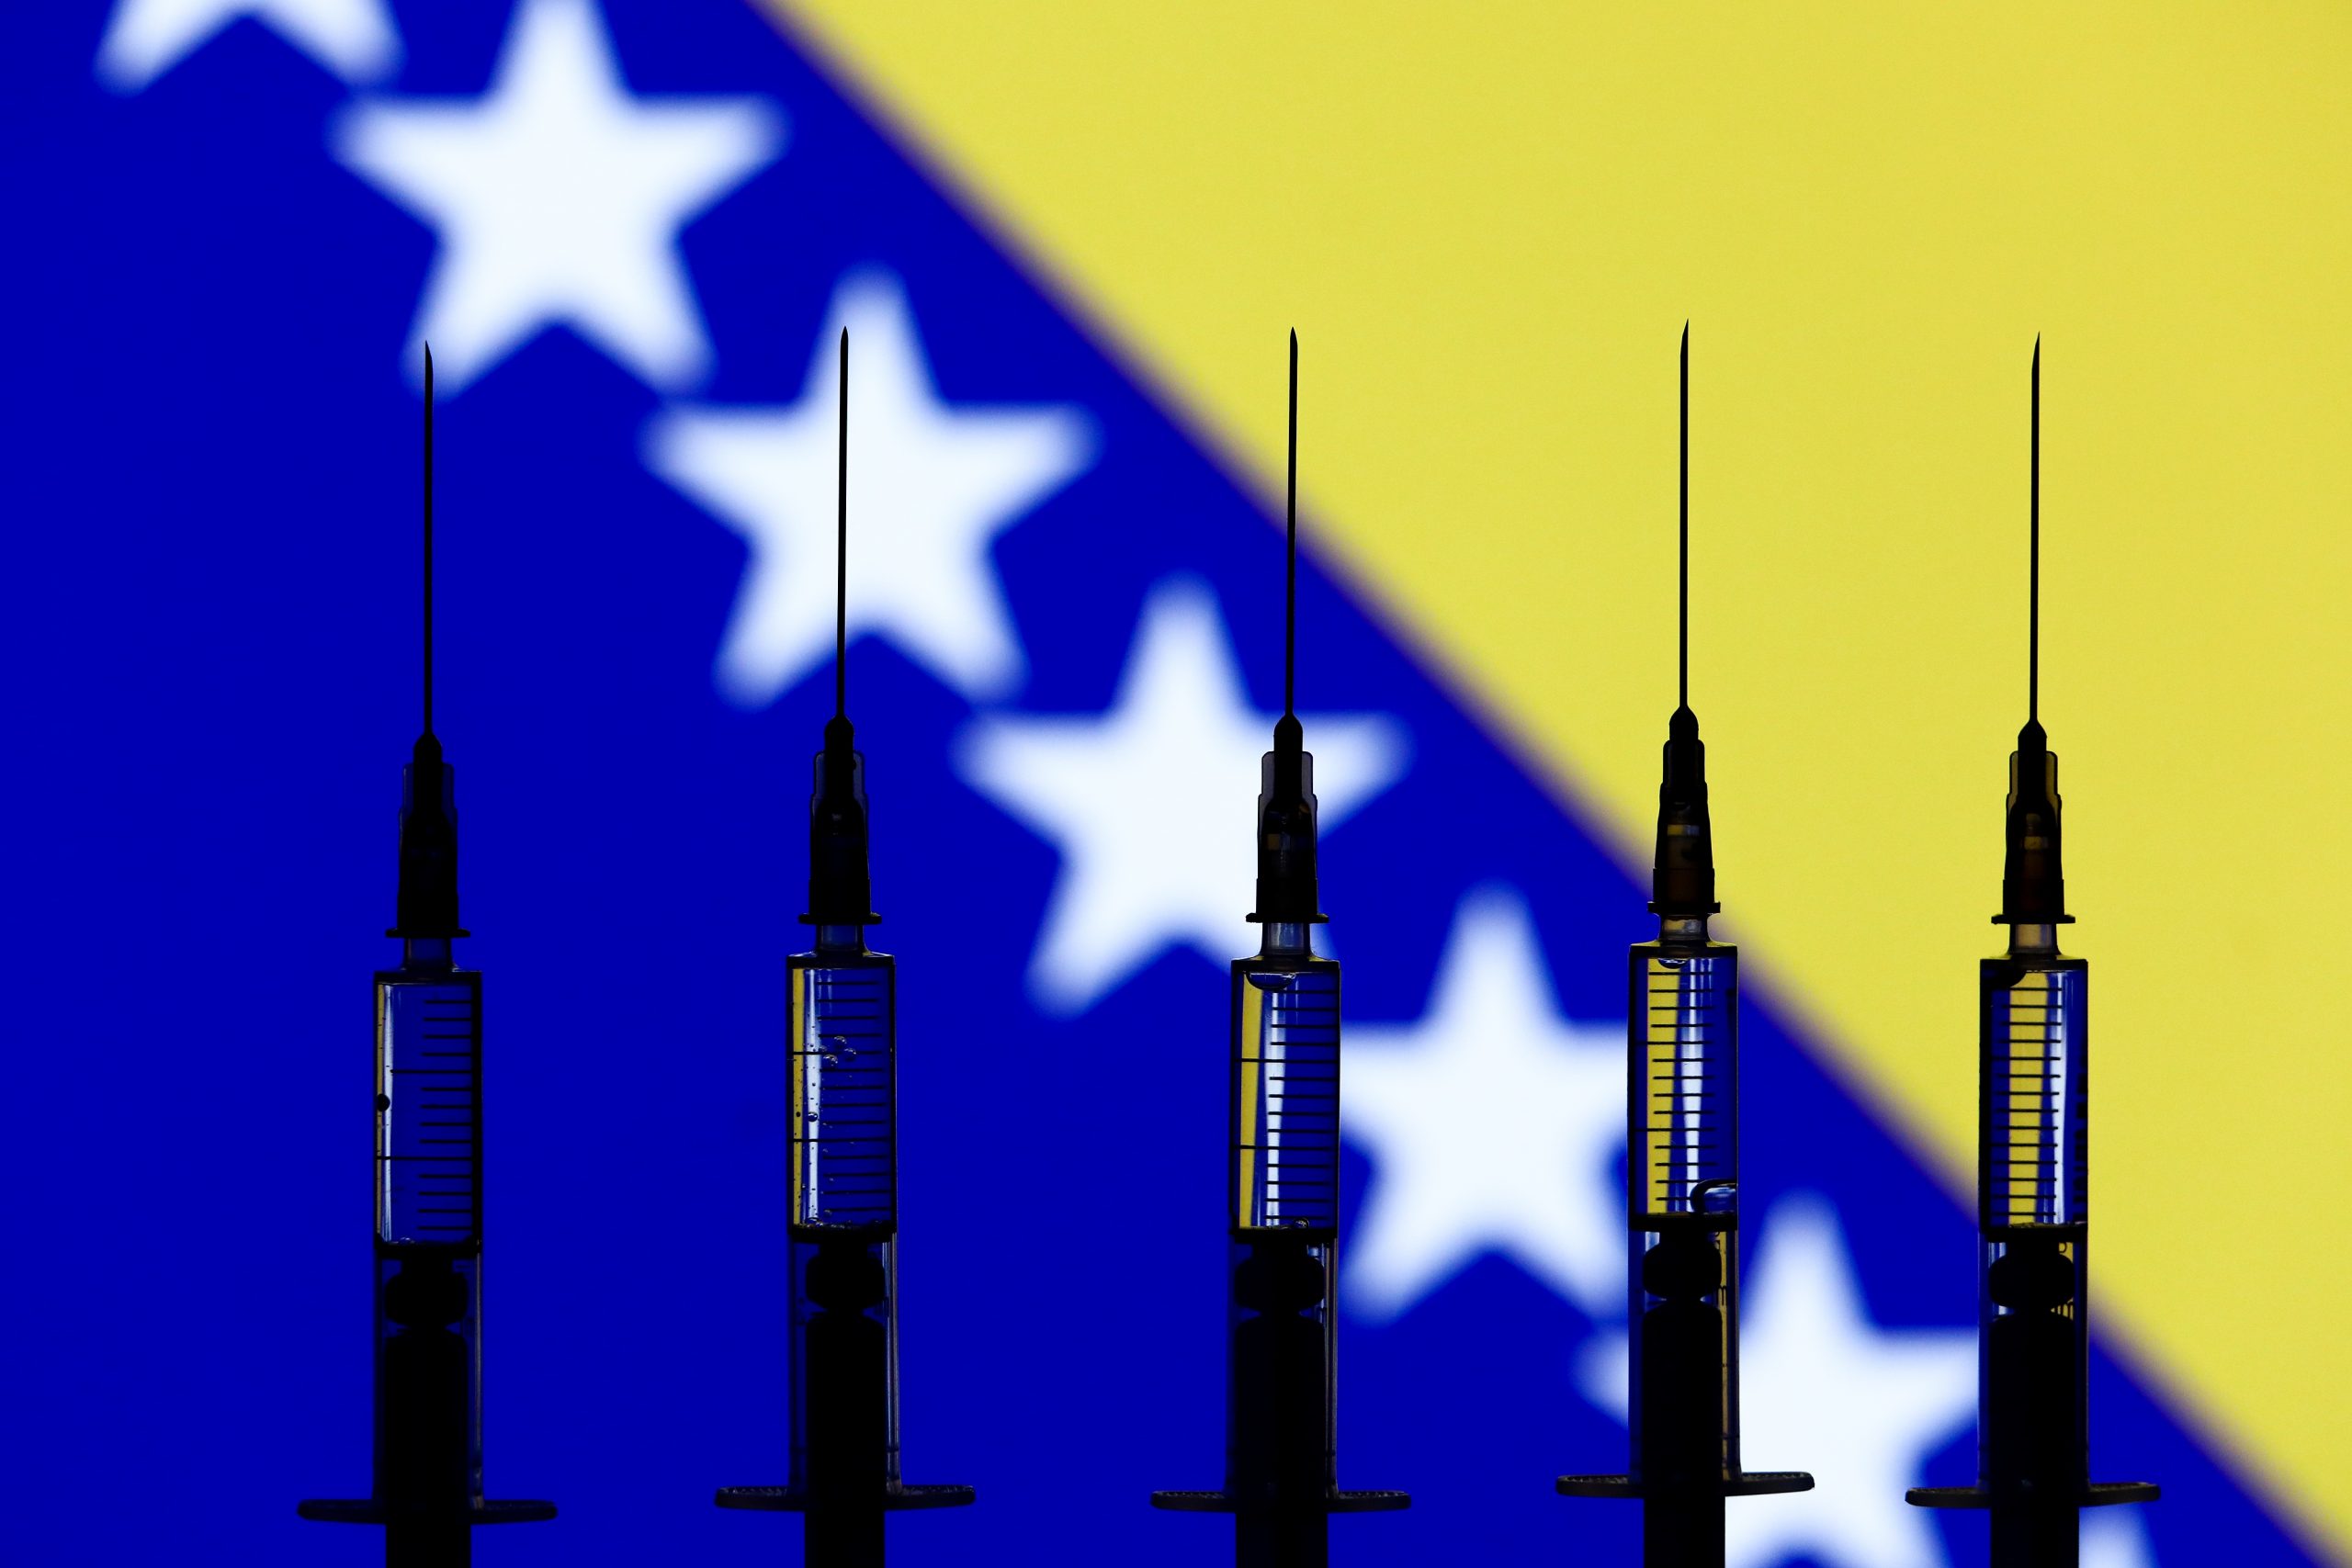 11.11.2020., Sarajevo, Bosna i Hercegovina - Ilustracije za cjepivo protiv virusa Covid-19.
Photo: Armin Durgut/PIXSELL